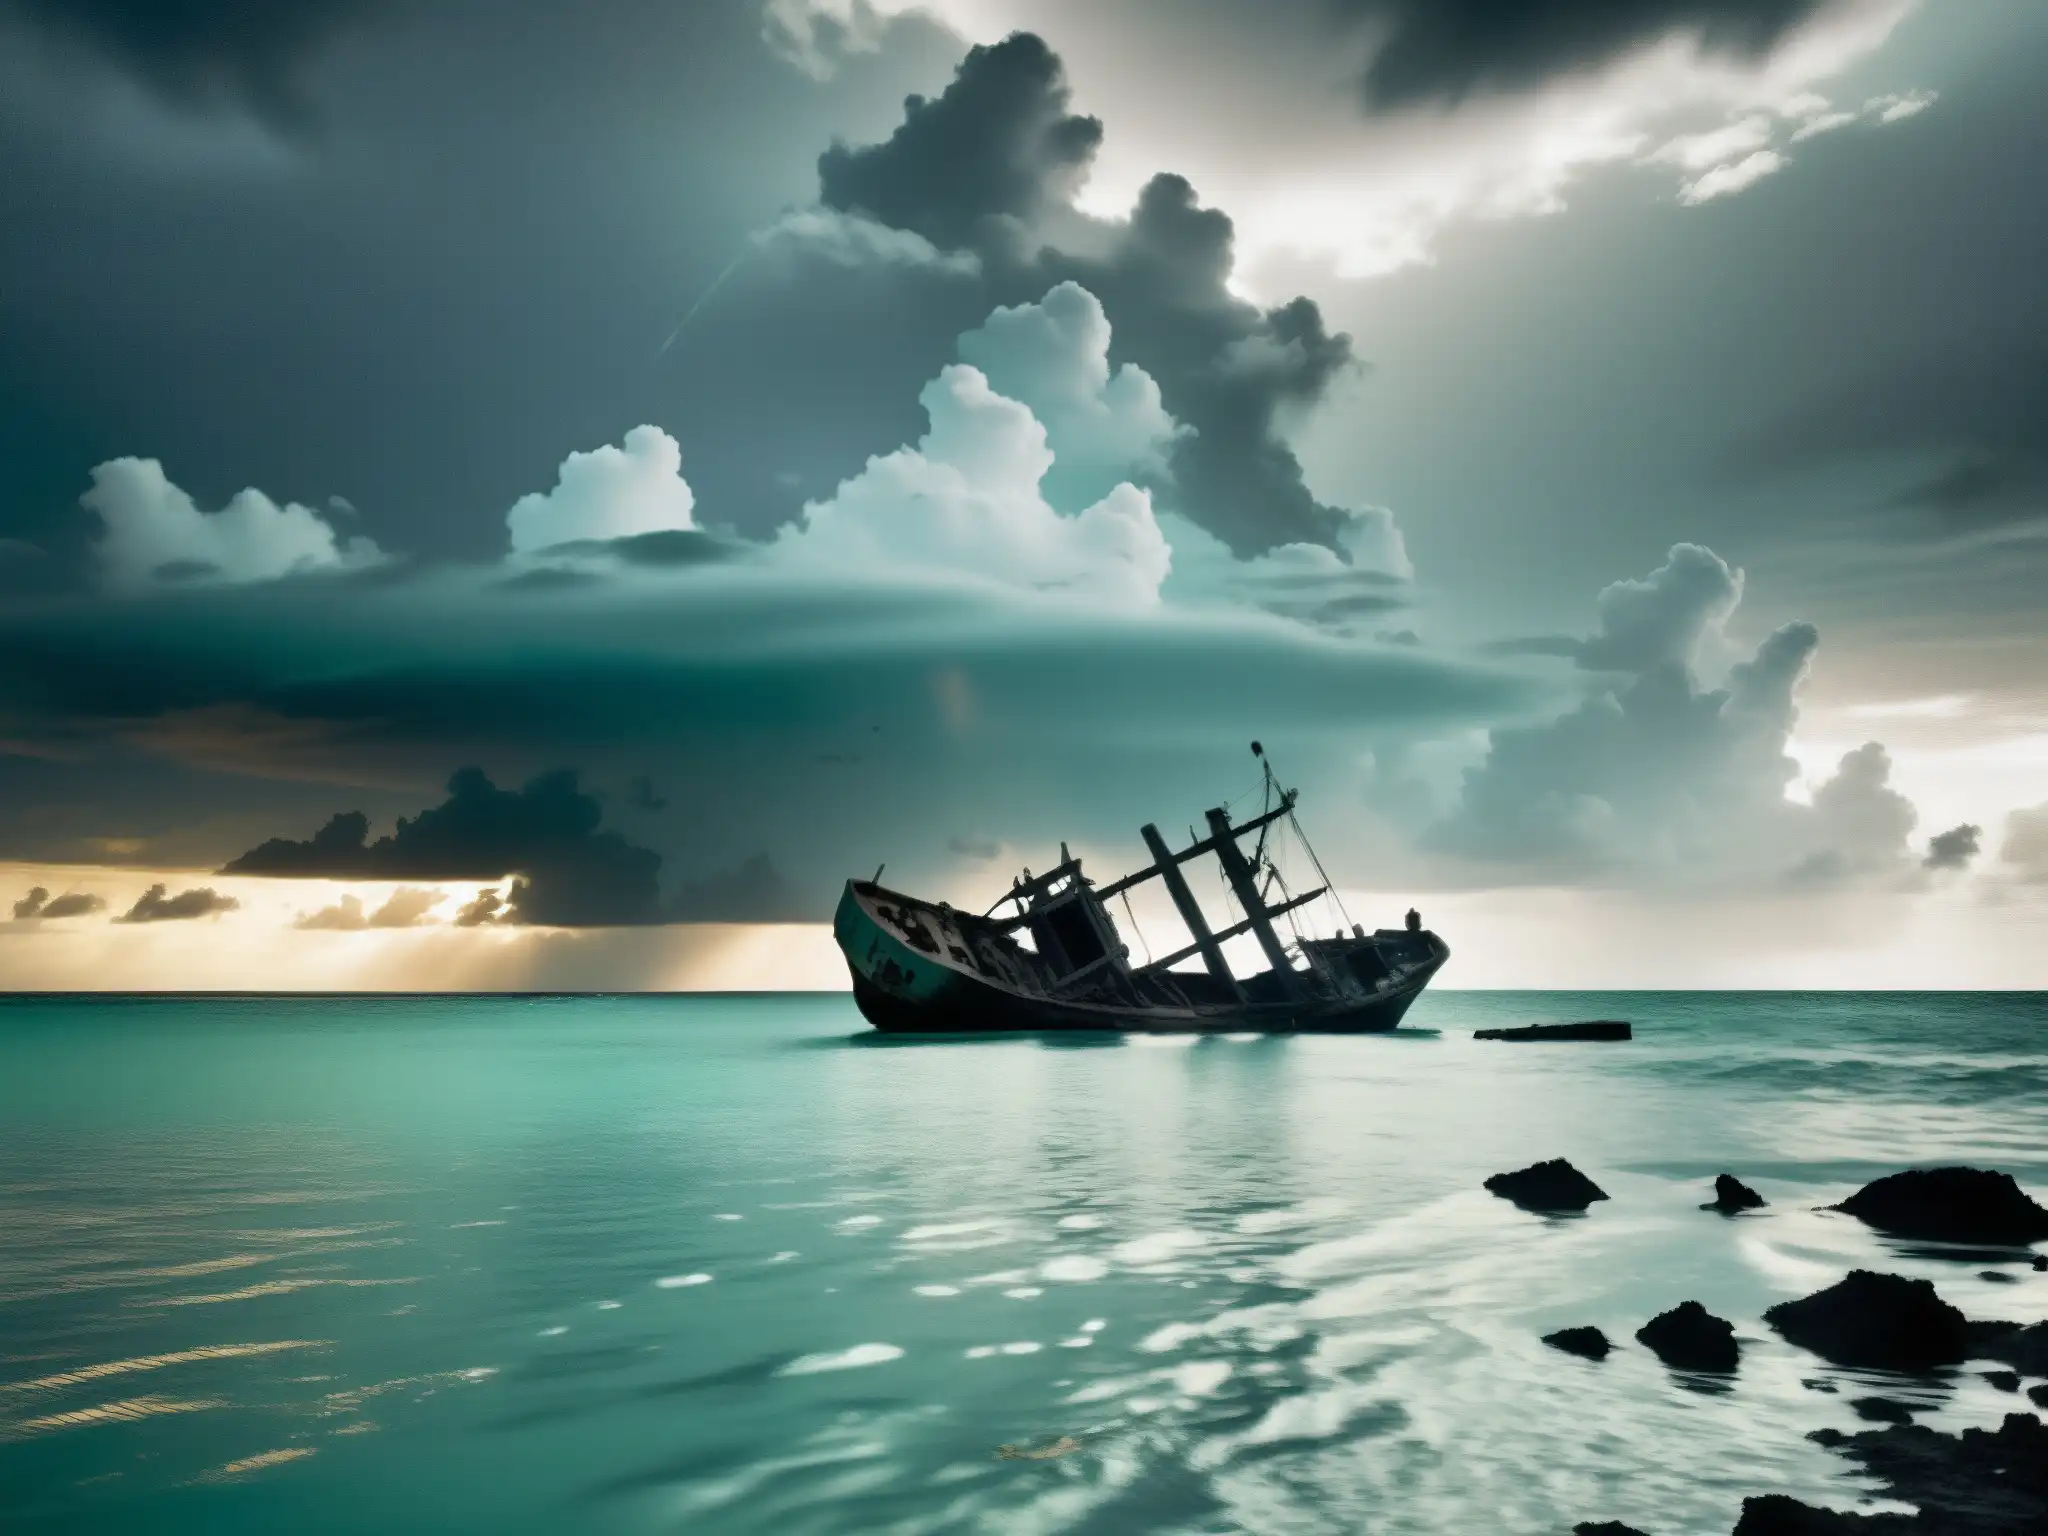 Imagen en blanco y negro de un naufragio en el mar, con restos de un barco grande parcialmente sumergido y rodeado de escombros